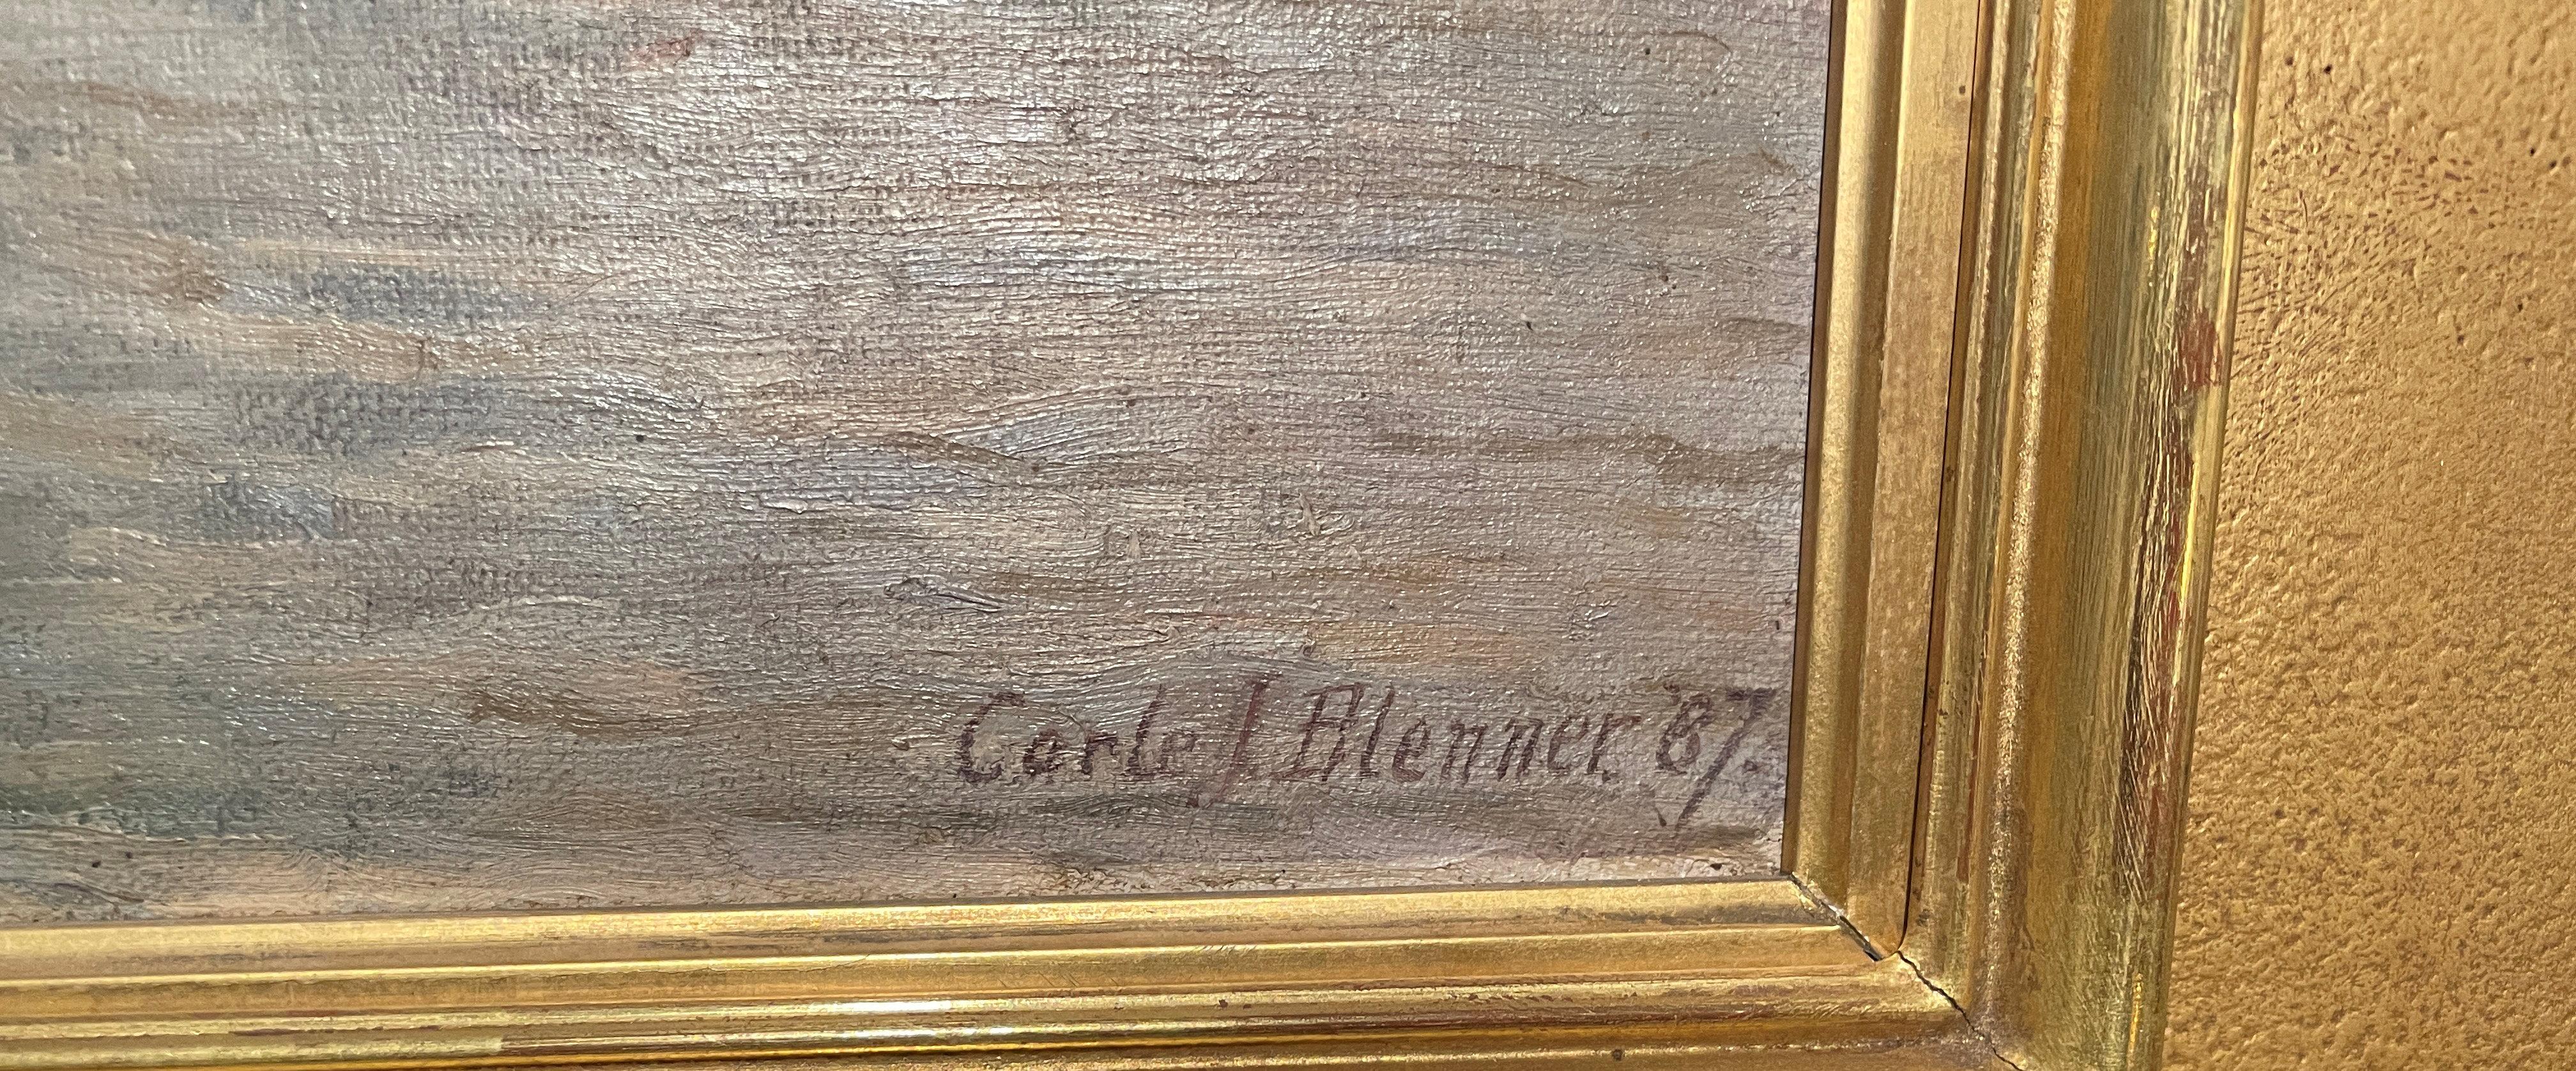 Carle John Blenner (1862 - 1952)
Pont Neuf, Seine, Paris, Frankreich, 1887
Öl auf Leinwand
15 x 22 Zoll
Signiert und datiert unten rechts; betitelt unten links

Carle J. Blenner wurde 1864 in Richmond, Virginia, geboren.  Er wurde in Marburg